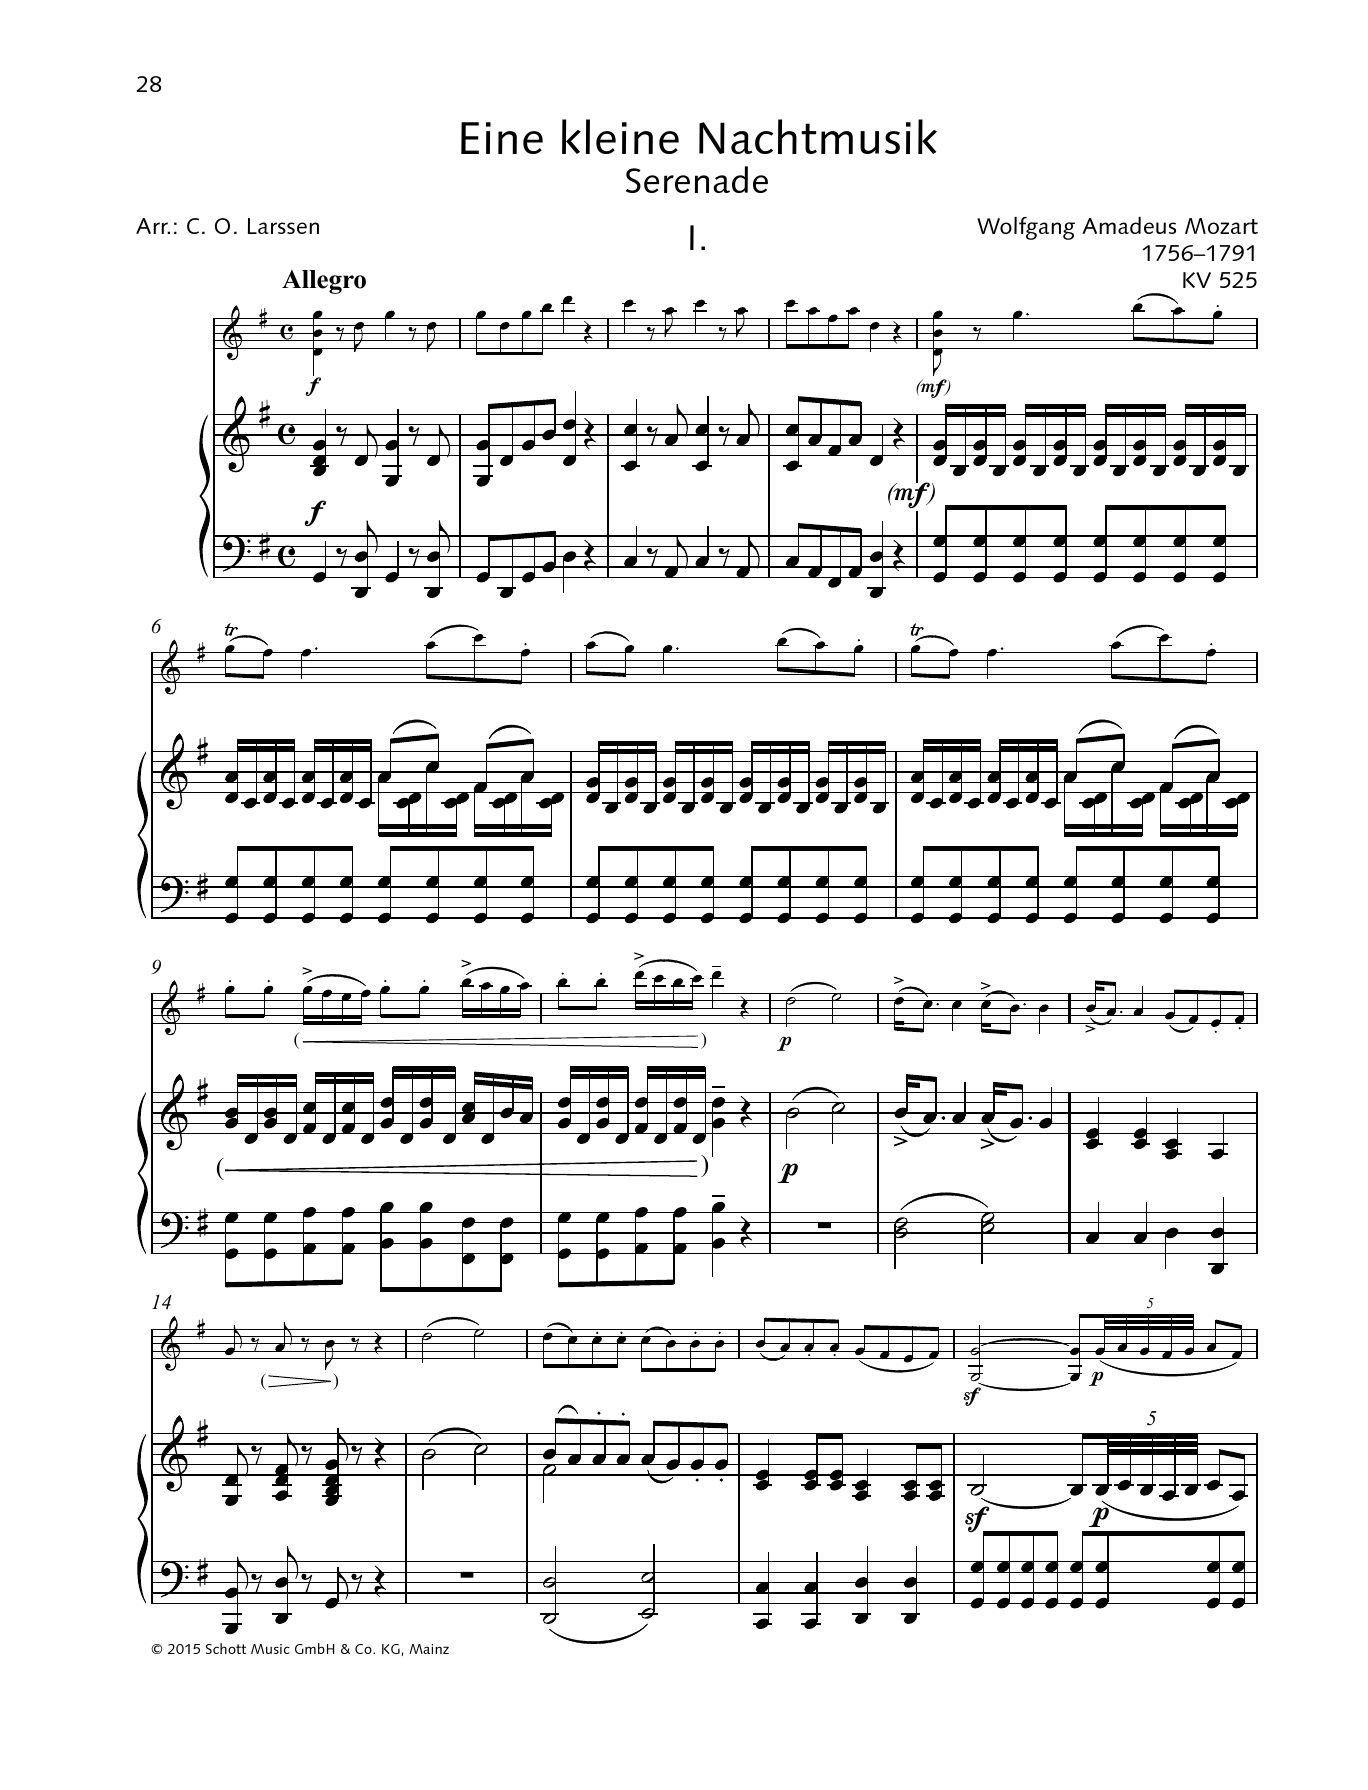 Download Wolfgang Amadeus Mozart Eine kleine Nachtmusik Sheet Music